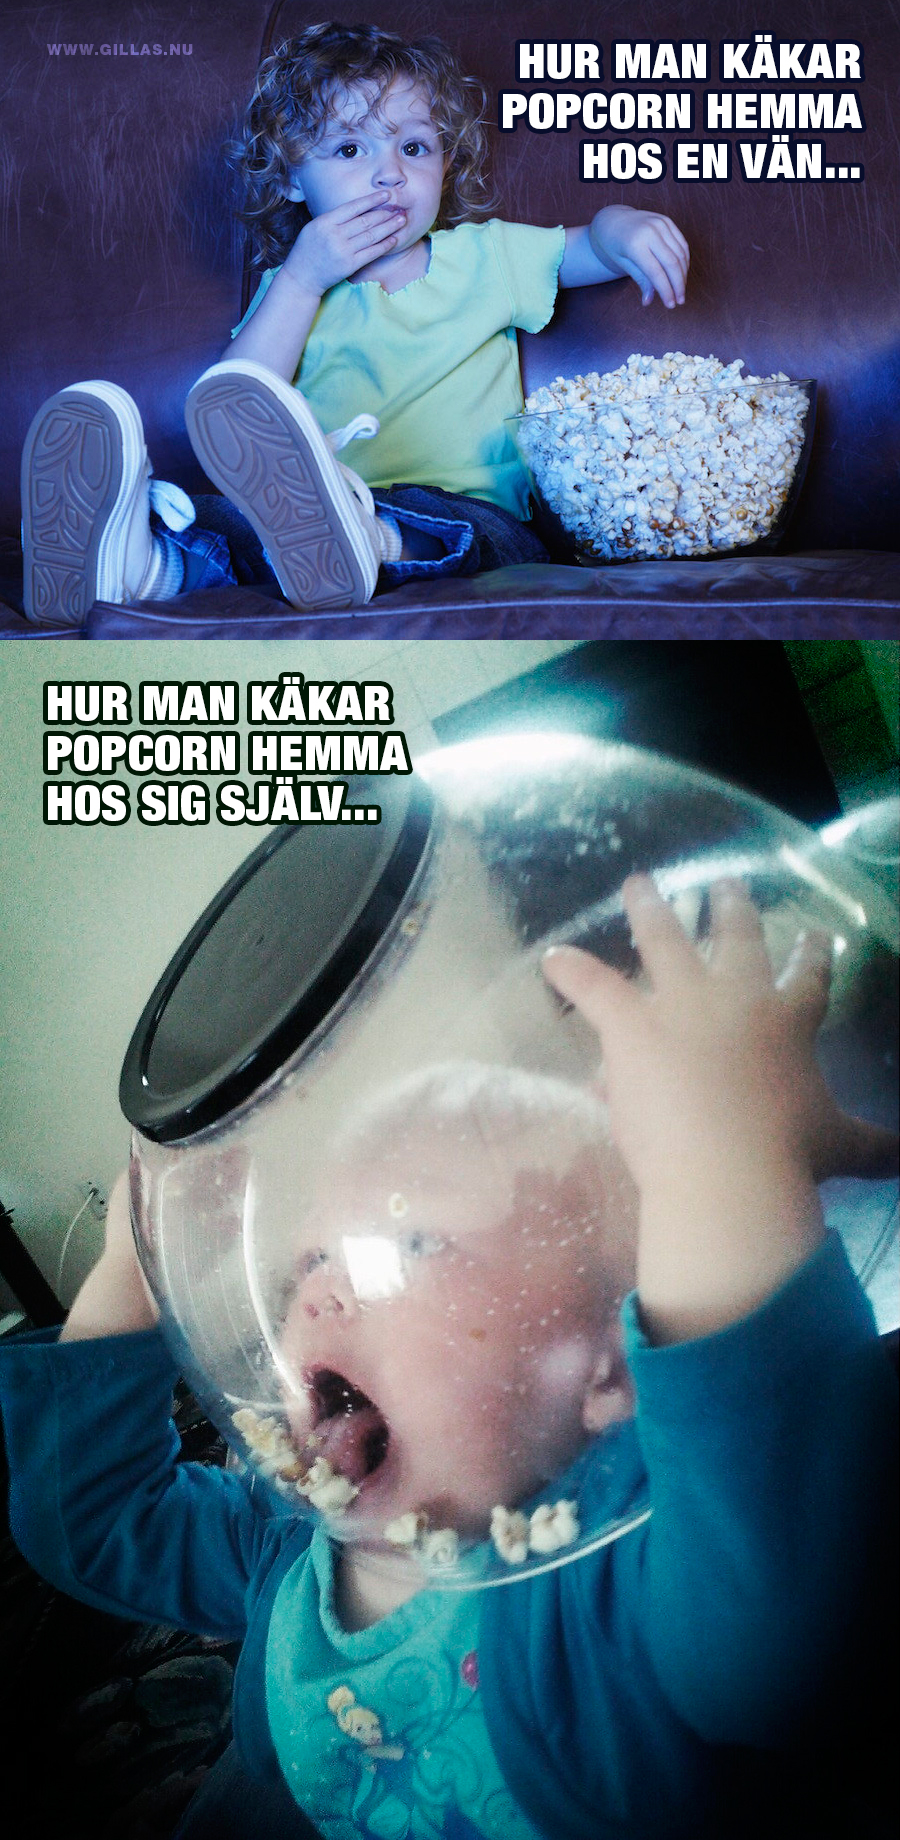 Barn som äter popcorn - Hur man käkar popcorn hemma hos en vän VS Hur man käkar popcorn hemma hos sig själv